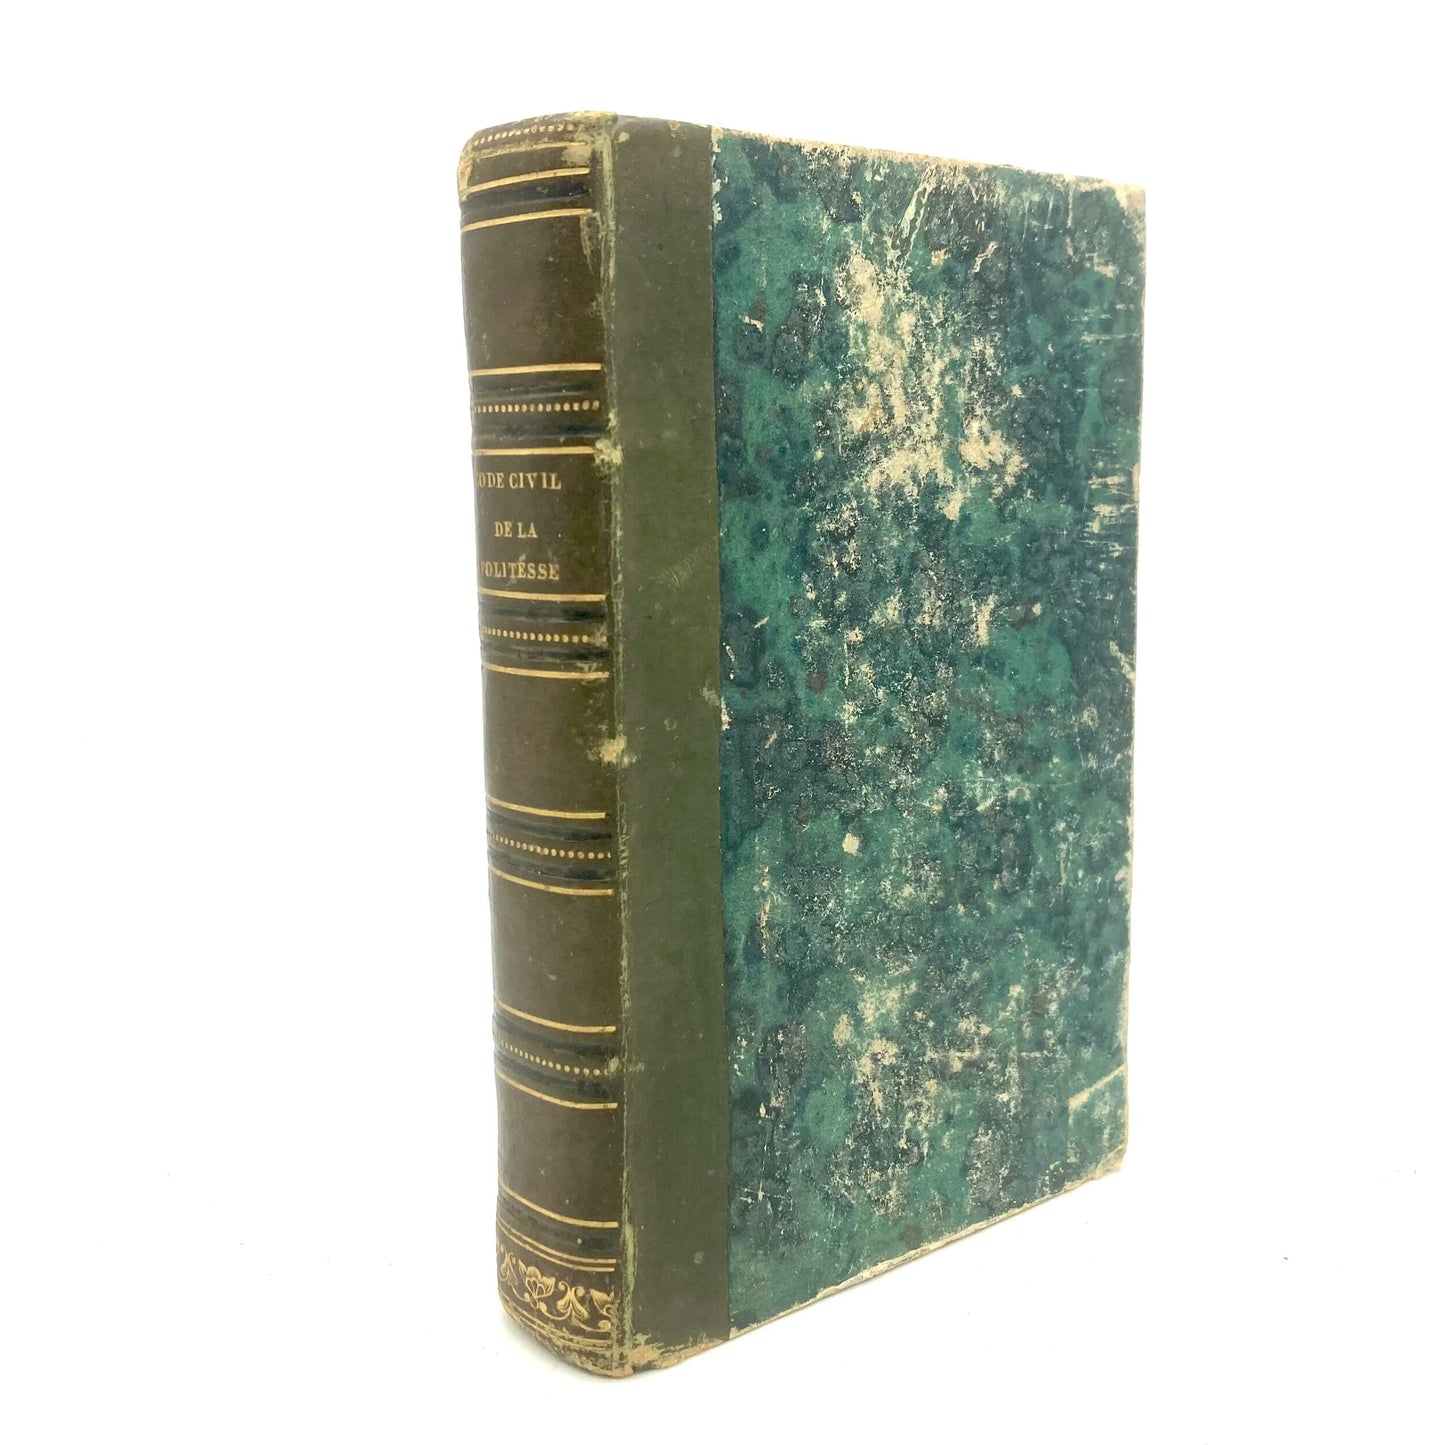 RAISSON, Horace "Code Civile, Manuel Complet de la Politesse" [J.P. Roret, 1828] - Buzz Bookstore